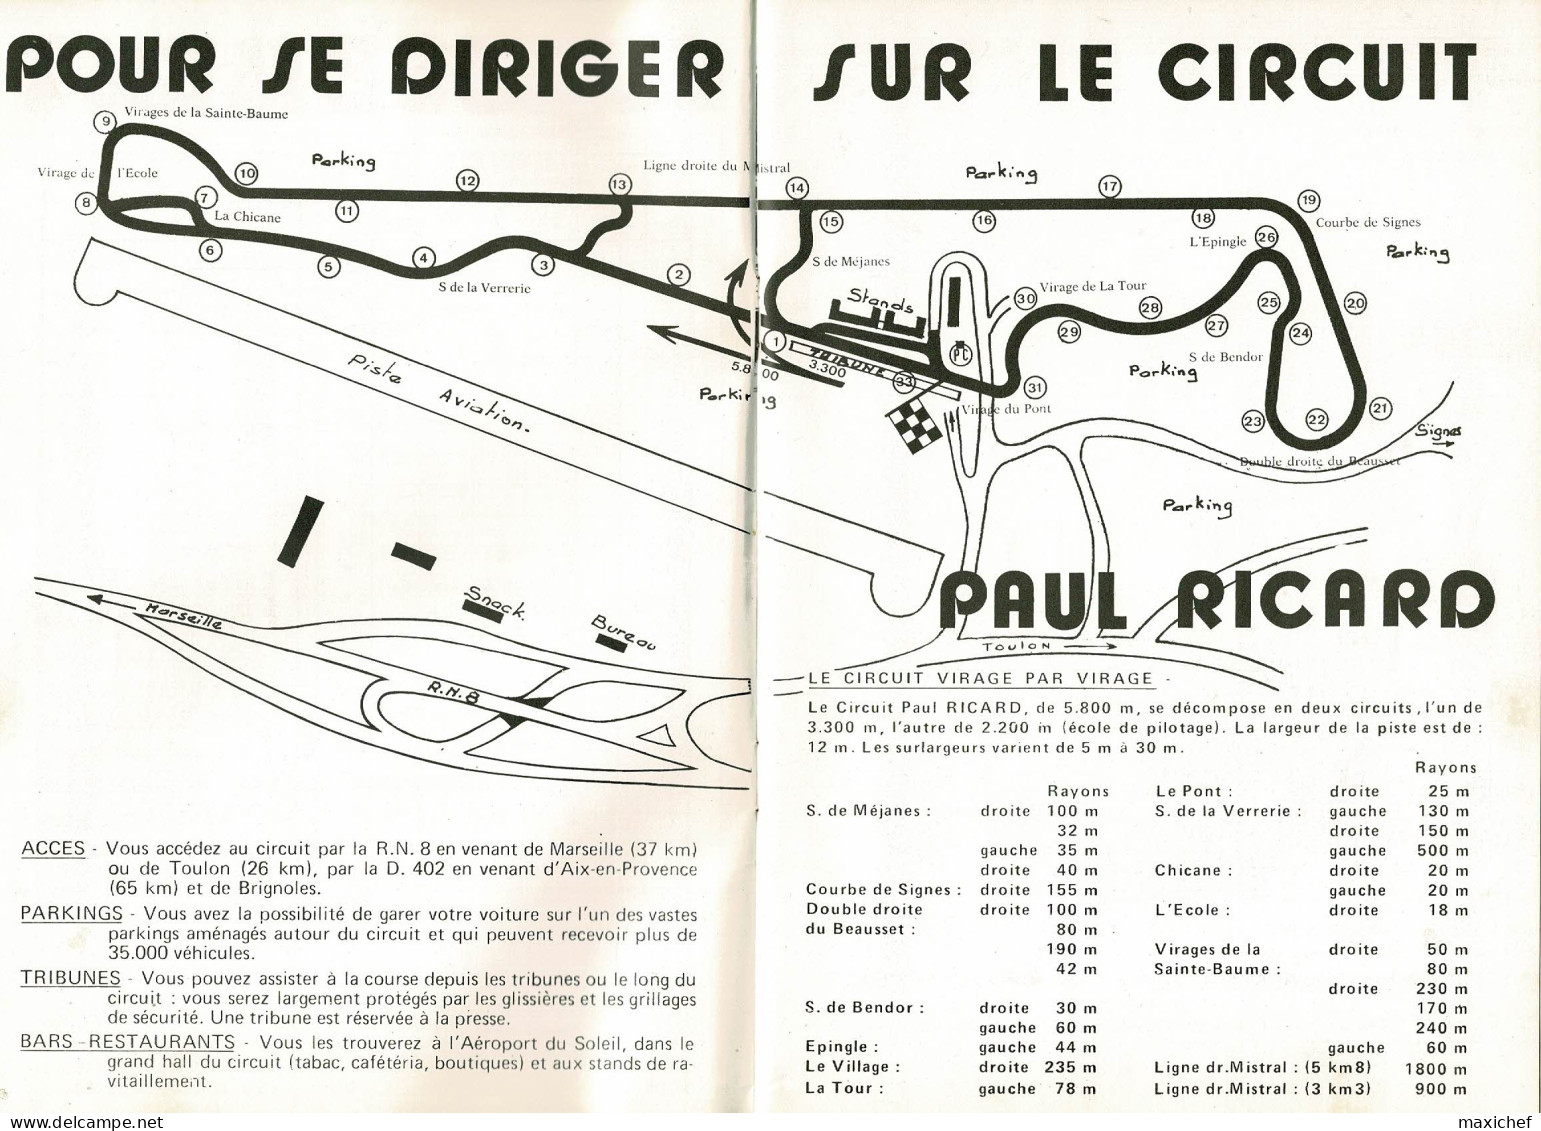 Circuit Paul Ricard 2.3.4 Juillet 1971 - Championnat Du Monde Formule 1, 4ème Grand Prix De France - 15 X 22cm - Car Racing - F1